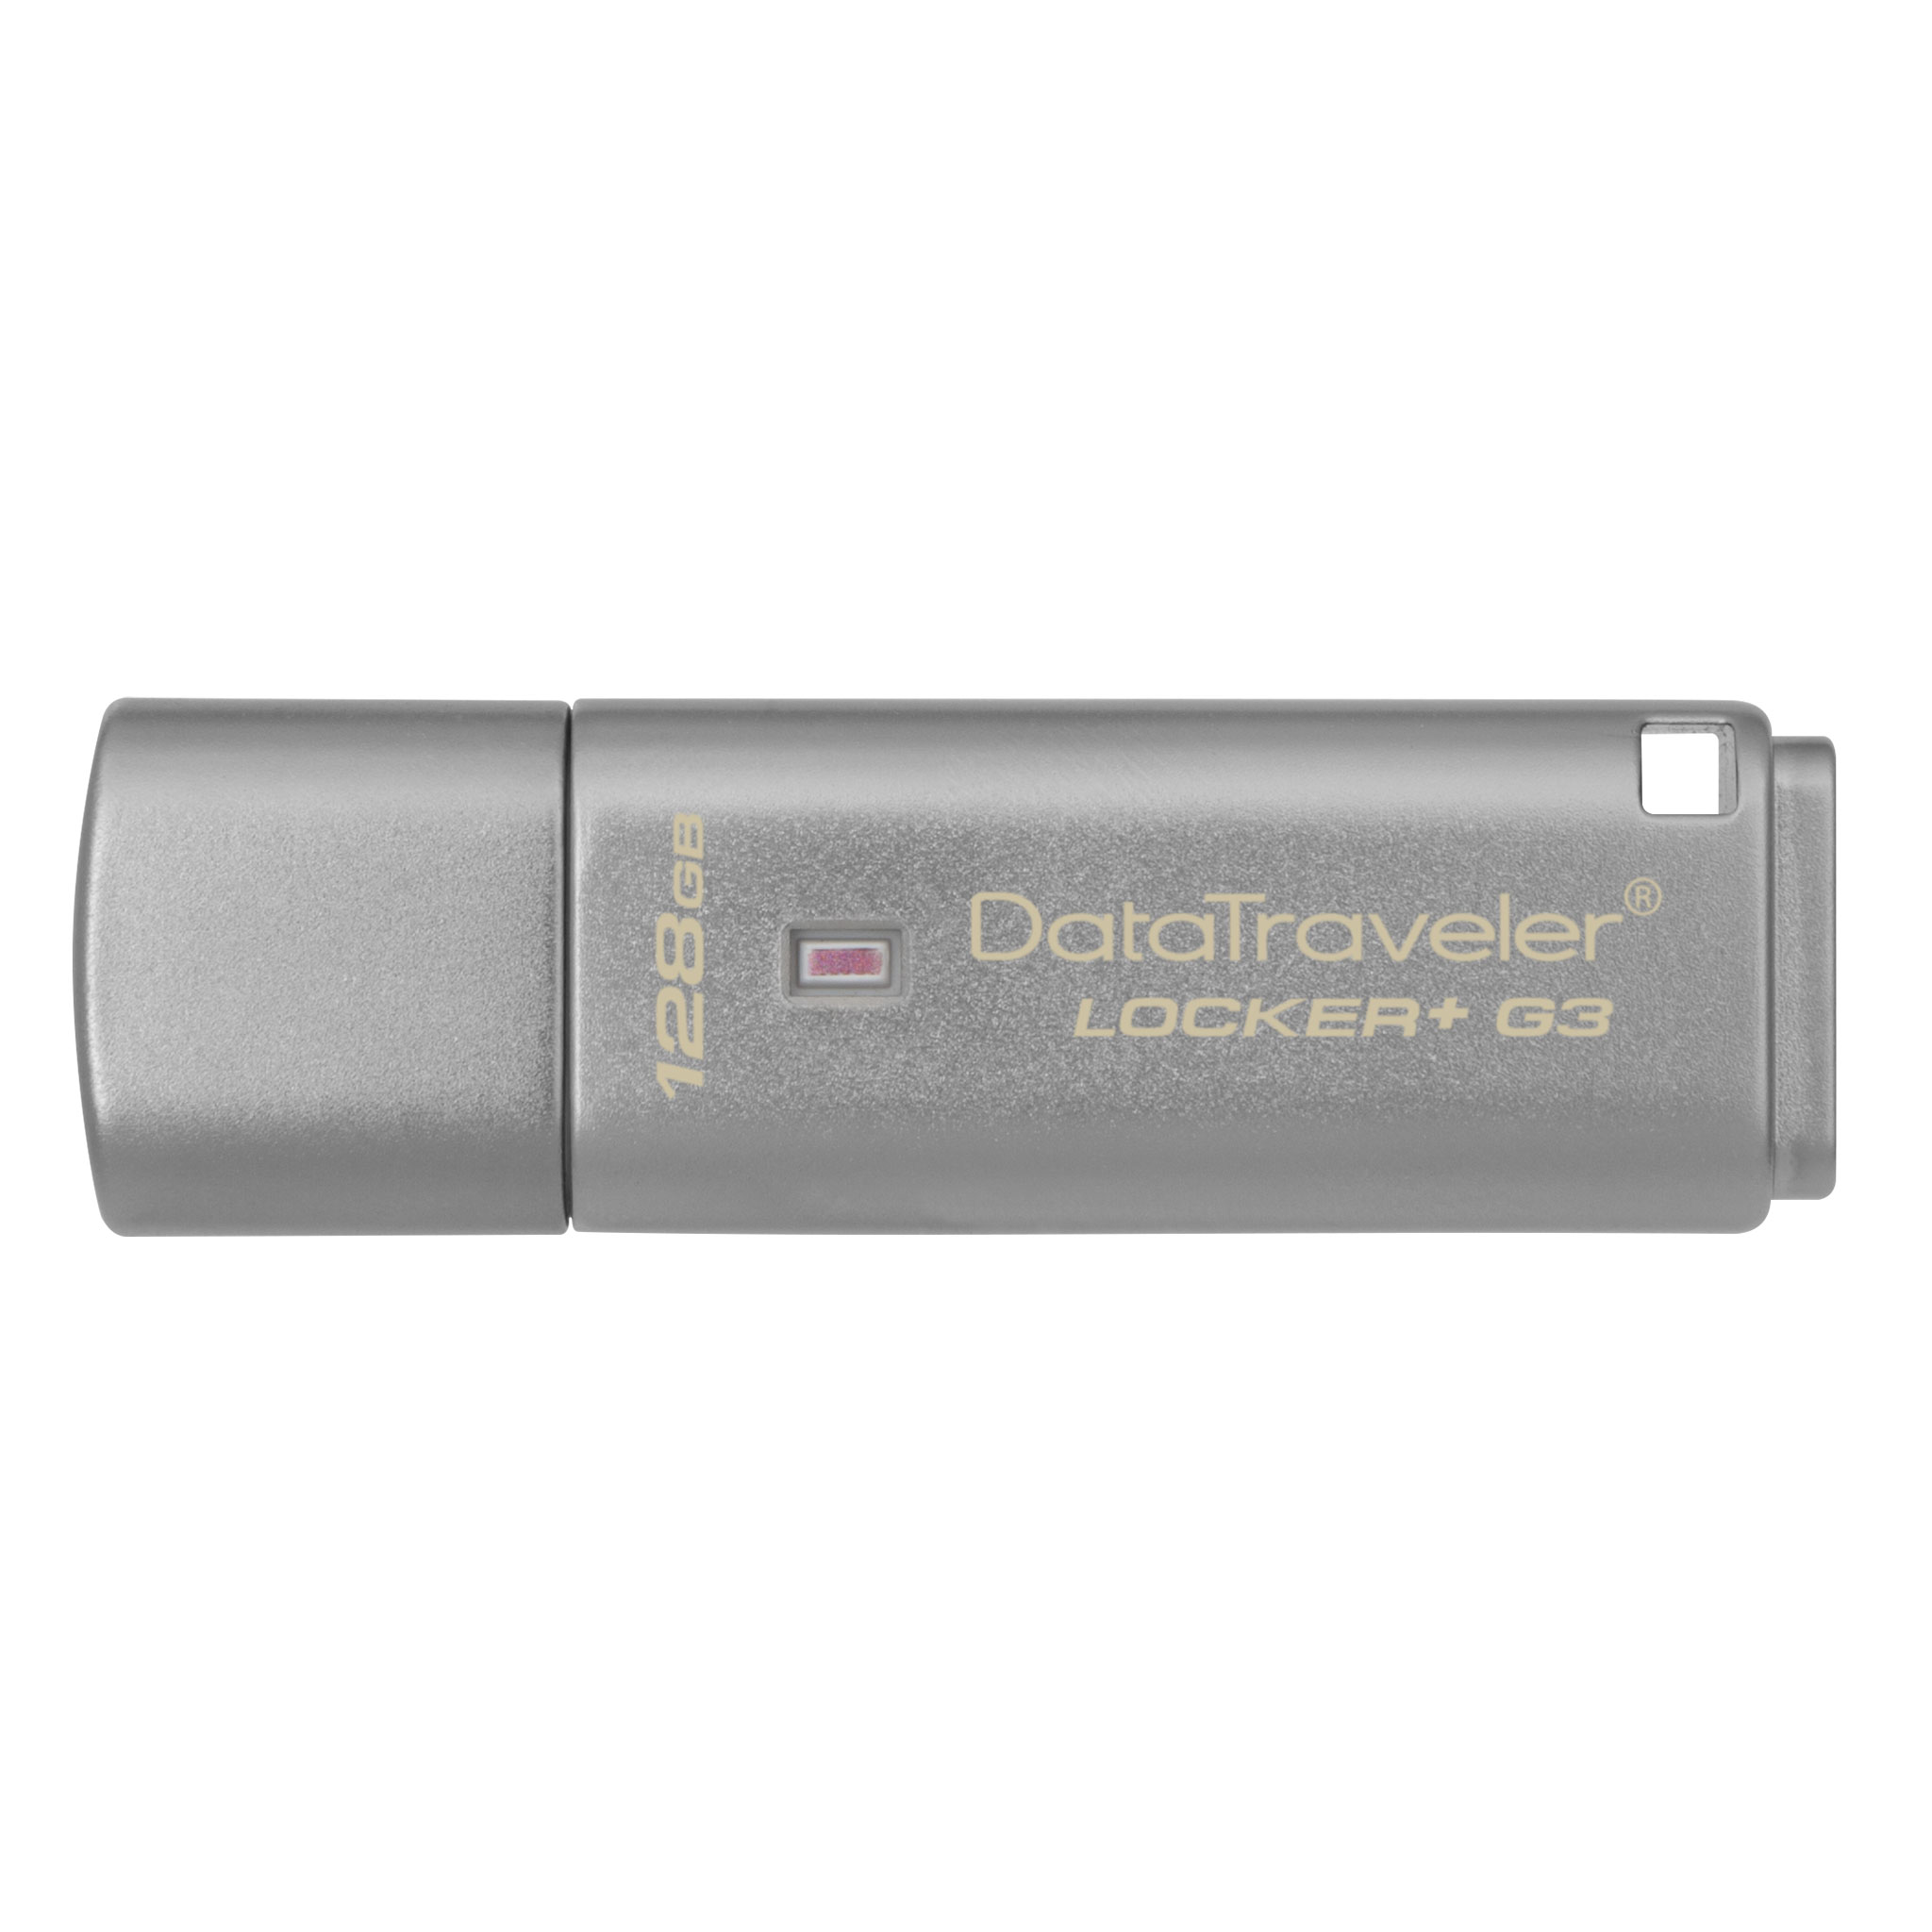 Flash drive kingston datatraveler locker+ g3 128gb usb 3.0